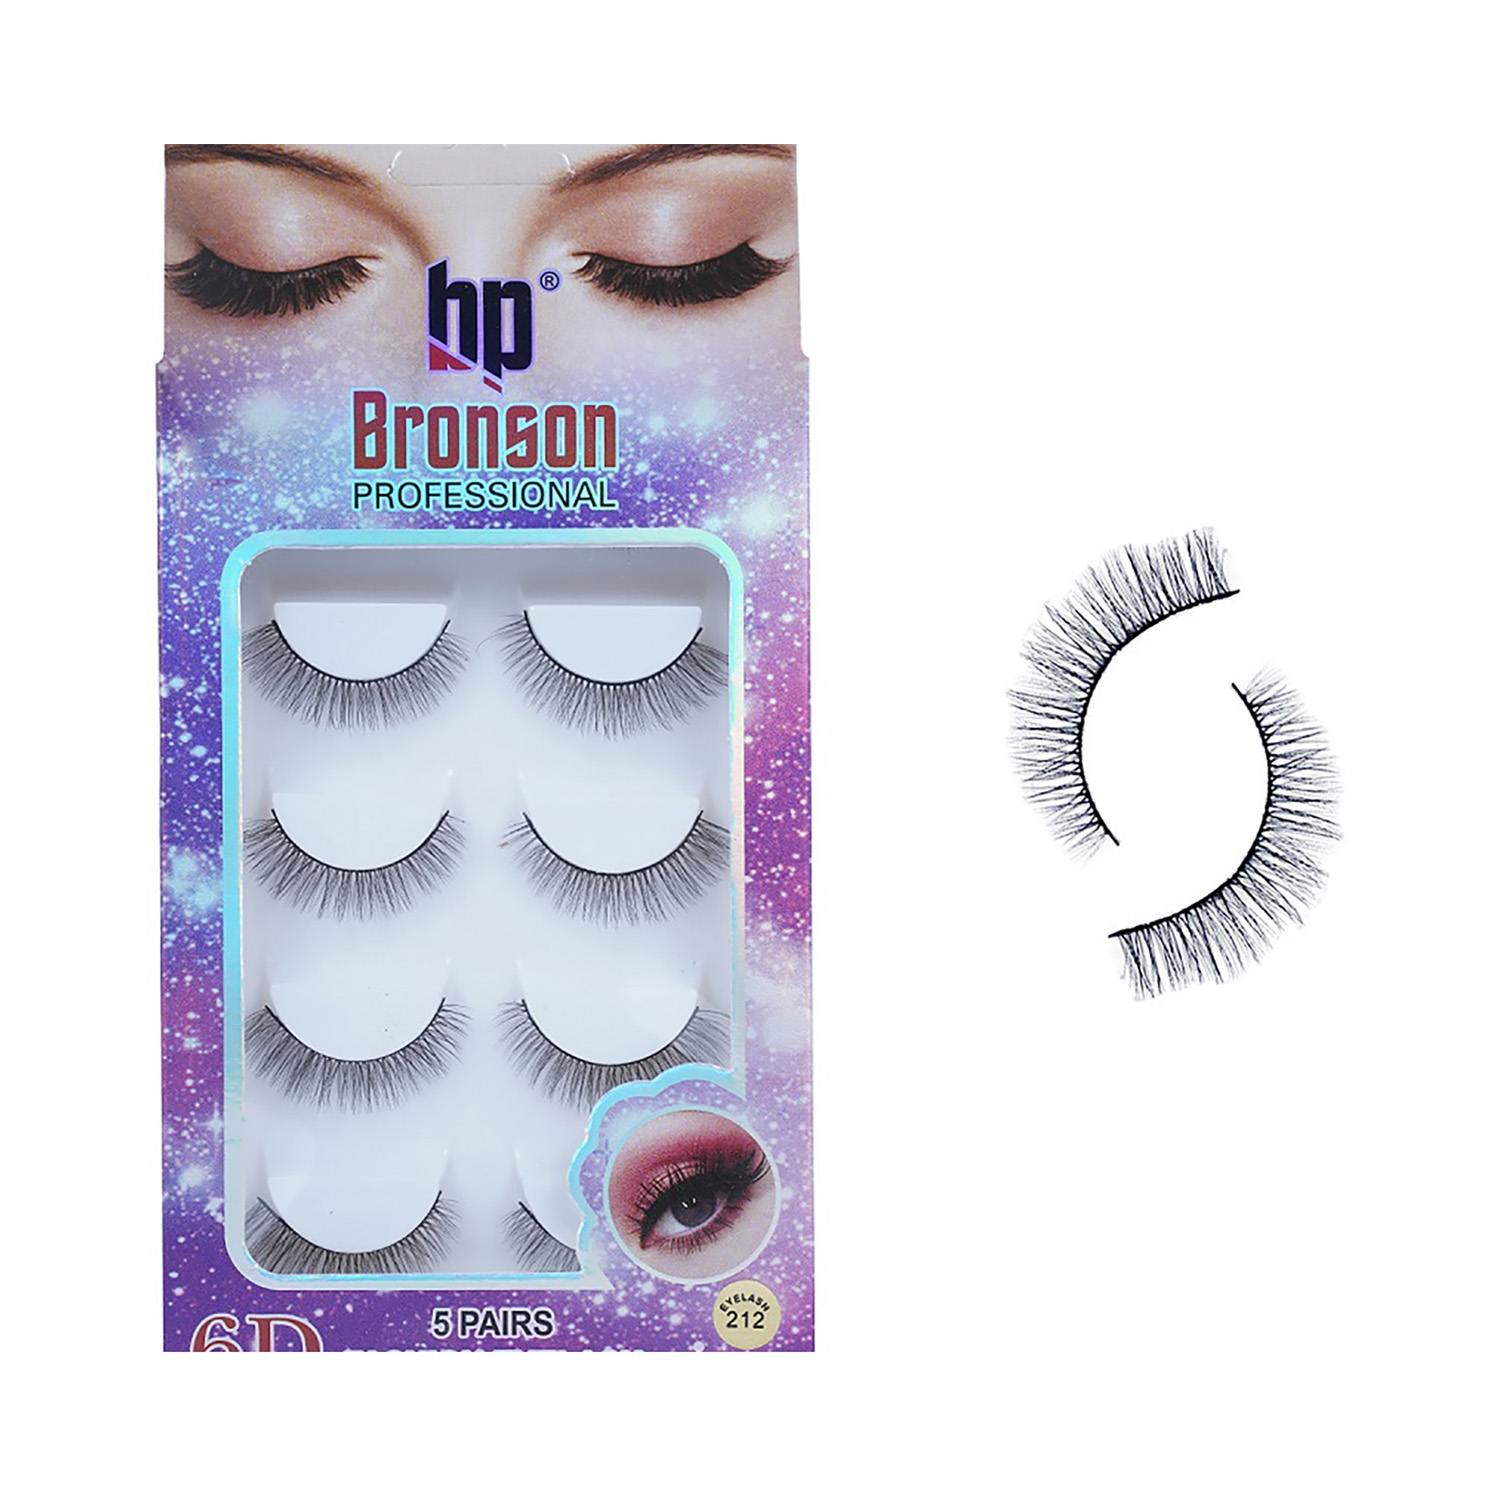 Bronson Professional | Bronson Professional Pair 6D Long & Natural False Eyelashes - 212 - Black (5 Pairs)